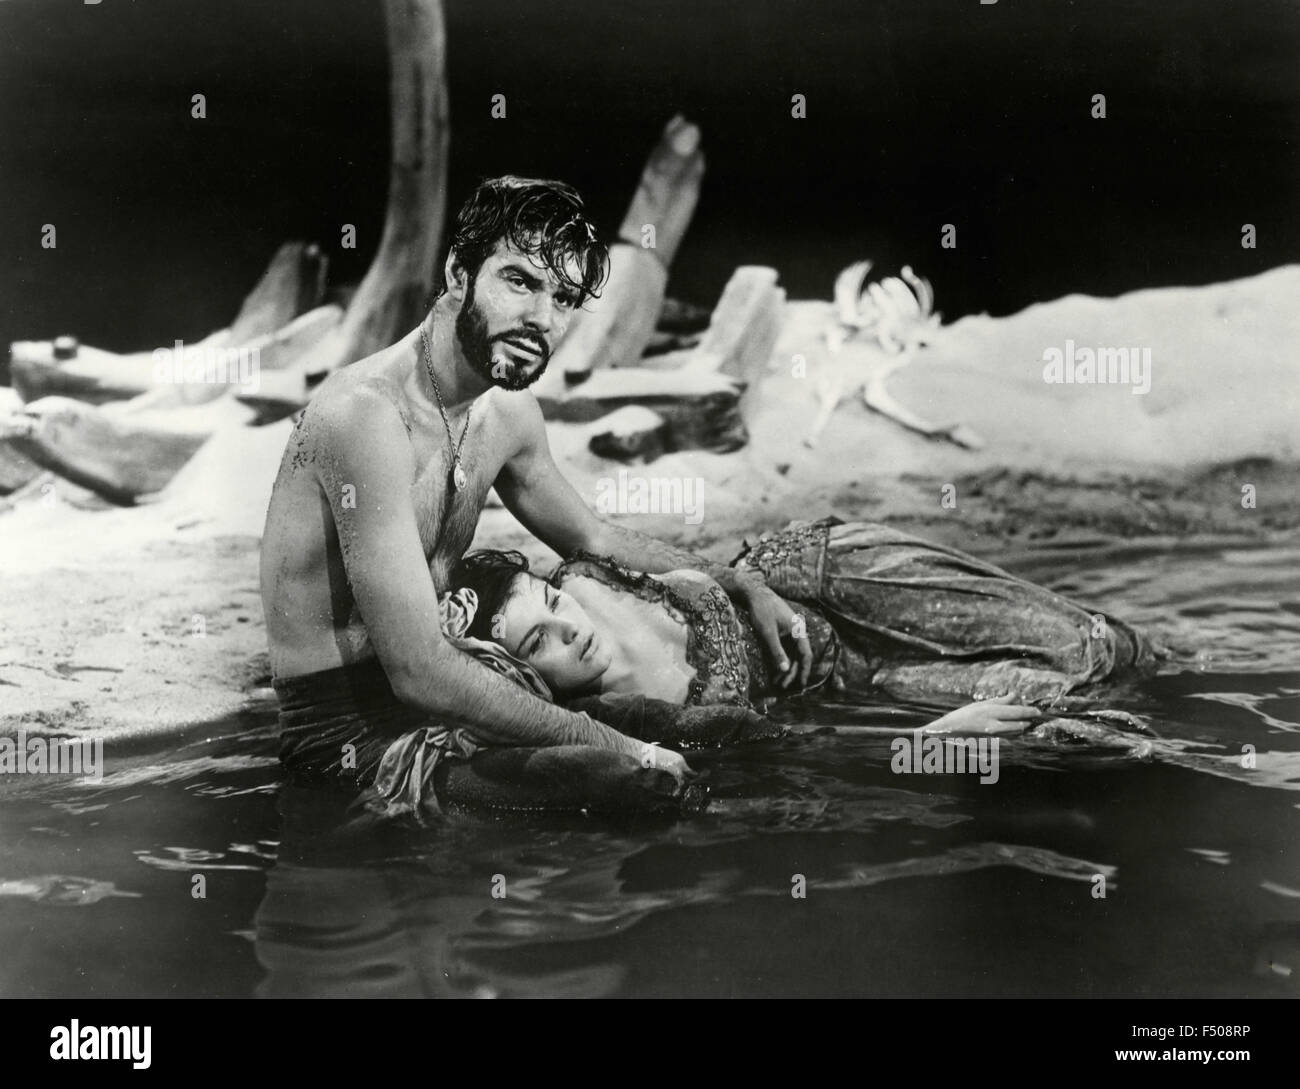 Les acteurs Louis Jourdan et Jean Peters dans une scène du film "Anne des Indes', USA 1951 Banque D'Images